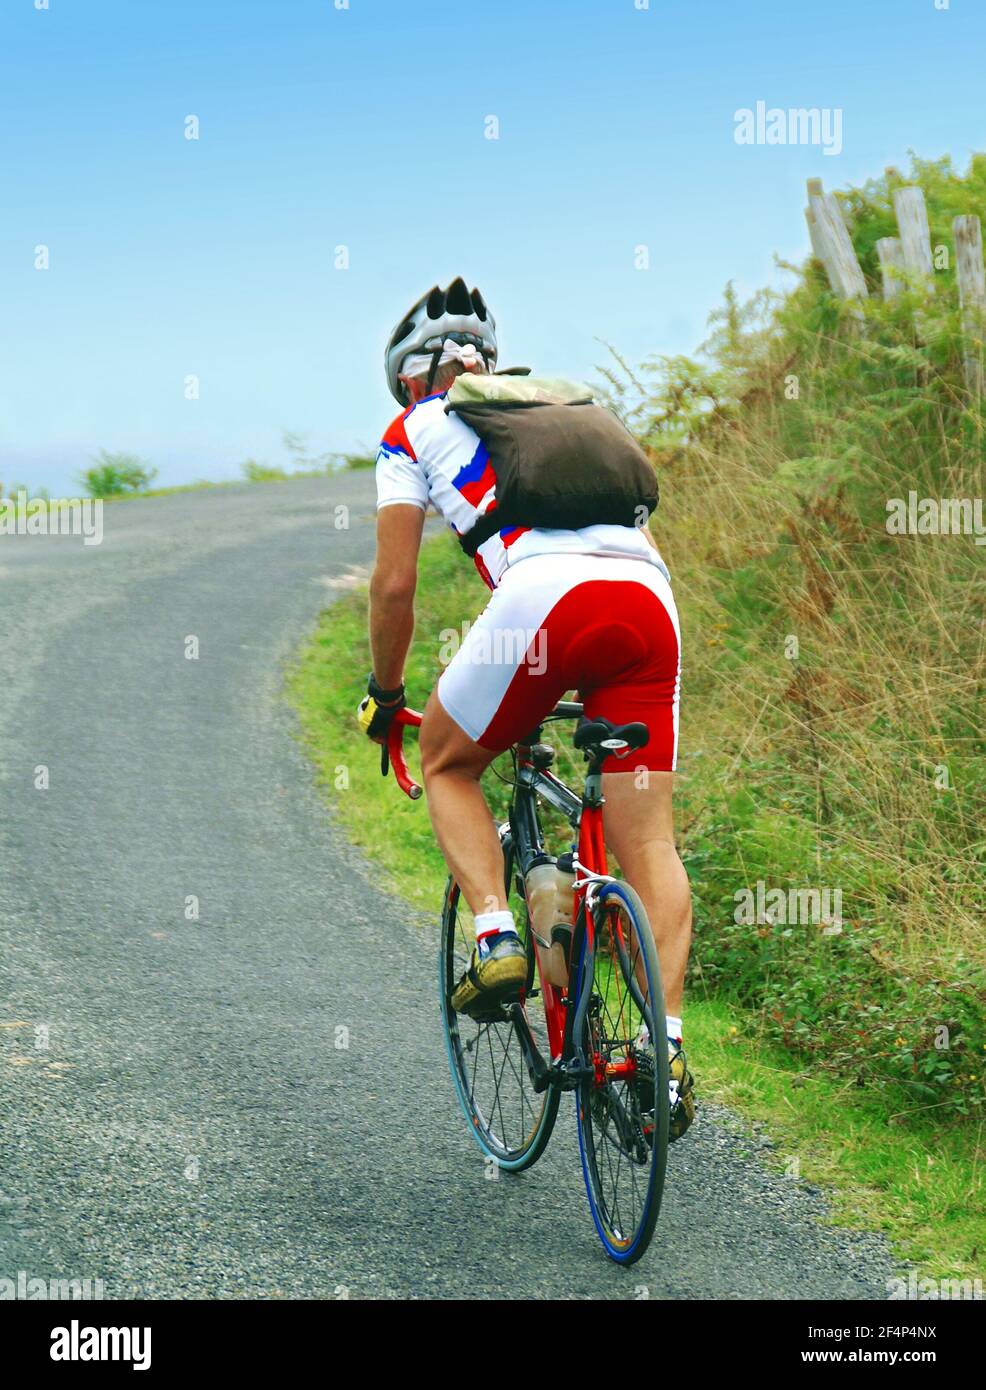 Cycliste sur une route de montagne sur fond de ciel bleu. Banque D'Images